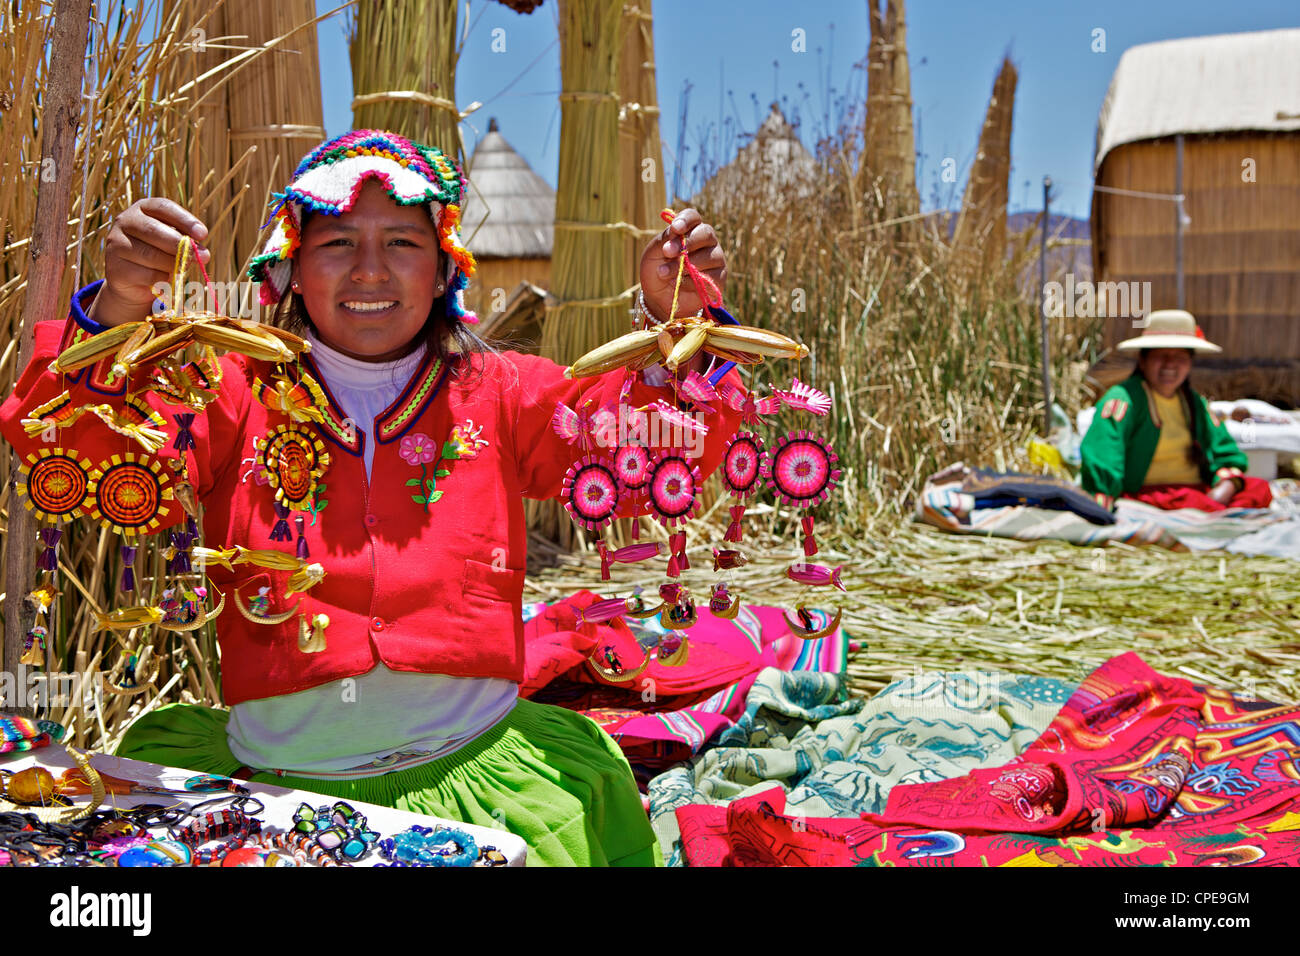 Ritratto di un Uros donna Indiana che vendono souvenir, Islas Flotantes (isole galleggianti), il lago Titicaca, Perù, Sud America Foto Stock